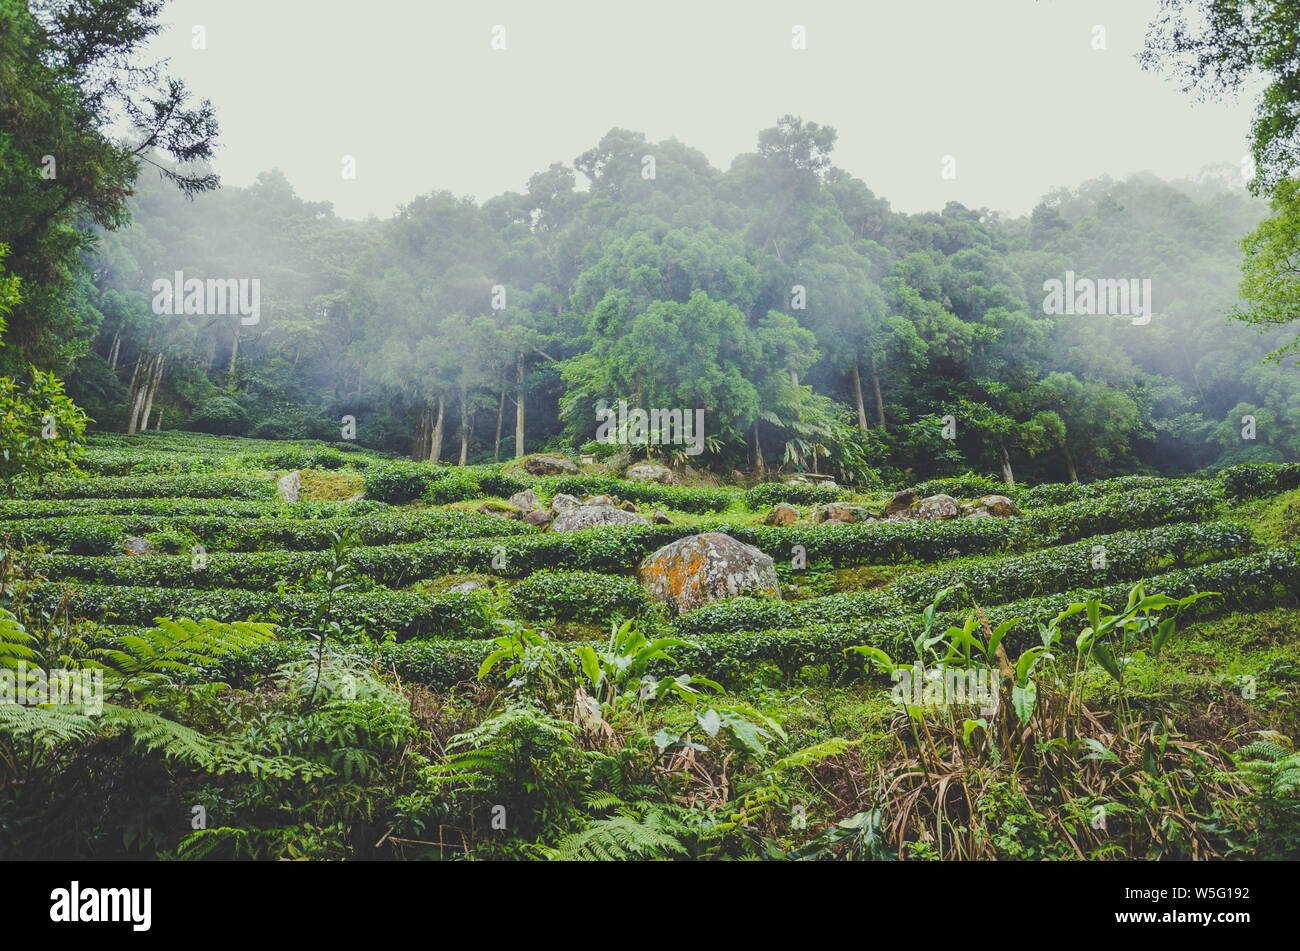 Moody paysage avec des plantations de thé en terrasse entouré de forêt tropicale. Photographié à Taiwan, en Asie. Les paysages brumeux. Brouillard, brouillard. Hipster, vintage style rétro. Banque D'Images